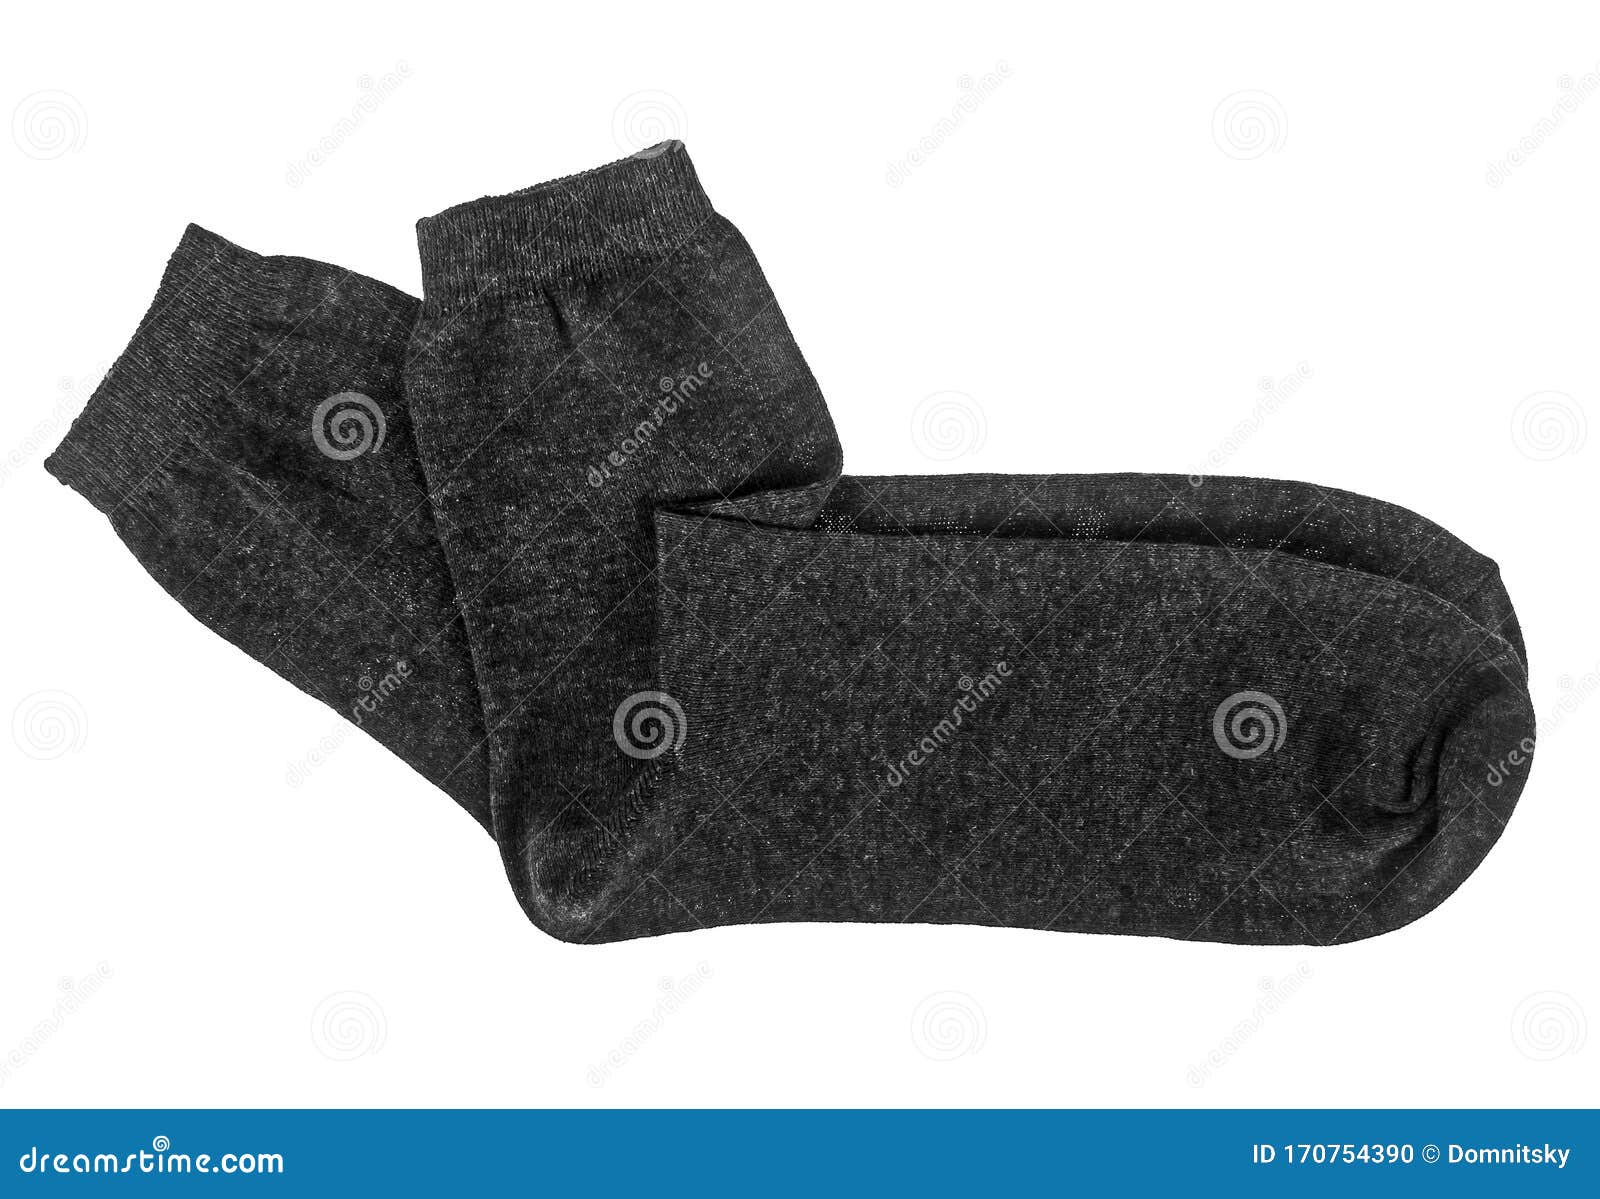 Gray Socks Isolated on White Background Stock Photo - Image of stylish ...